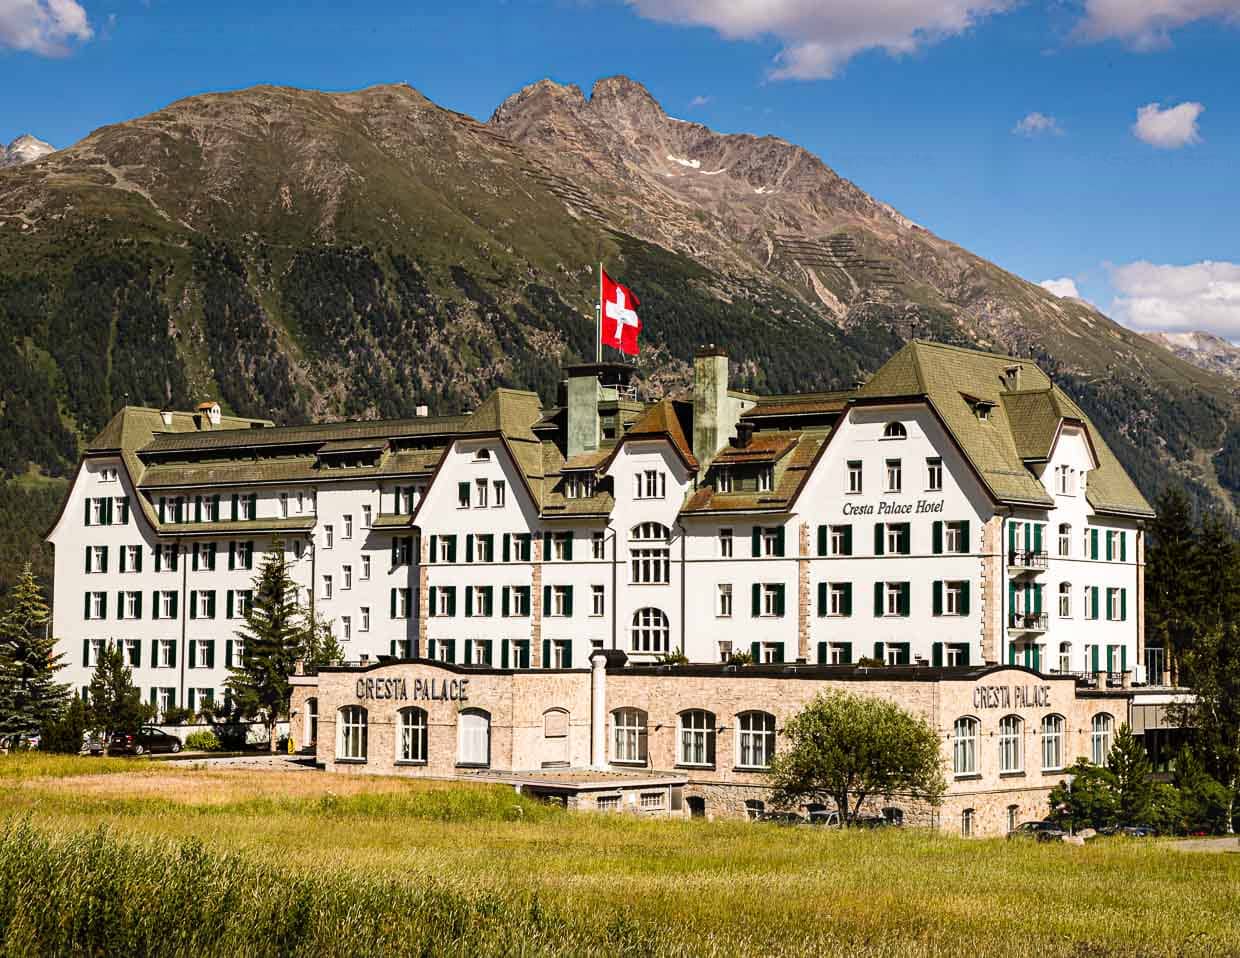 Das Cresta Palace ist ein Luxushotel in Celerina, Graubünden, Schweiz / © Foto: Georg Berg